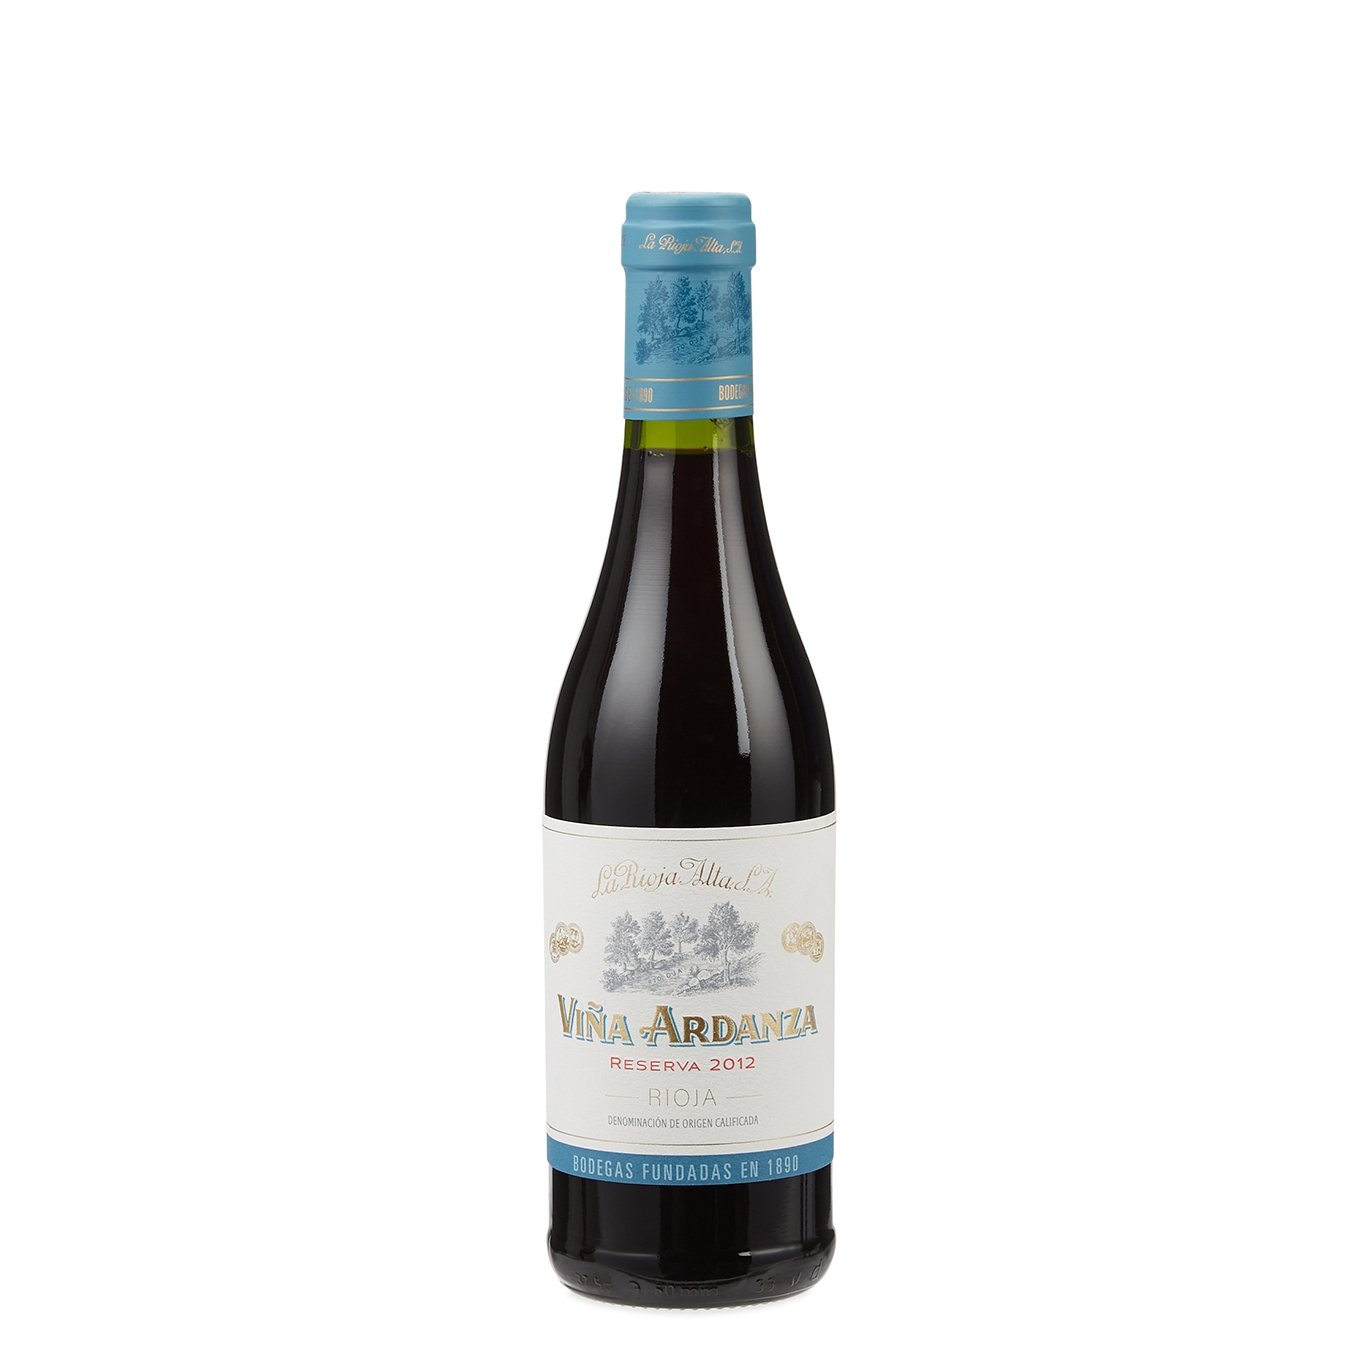 La Rioja Alta Viña Ardanza Rioja Reserva 2012 Half Bottle 375ml Red Wine